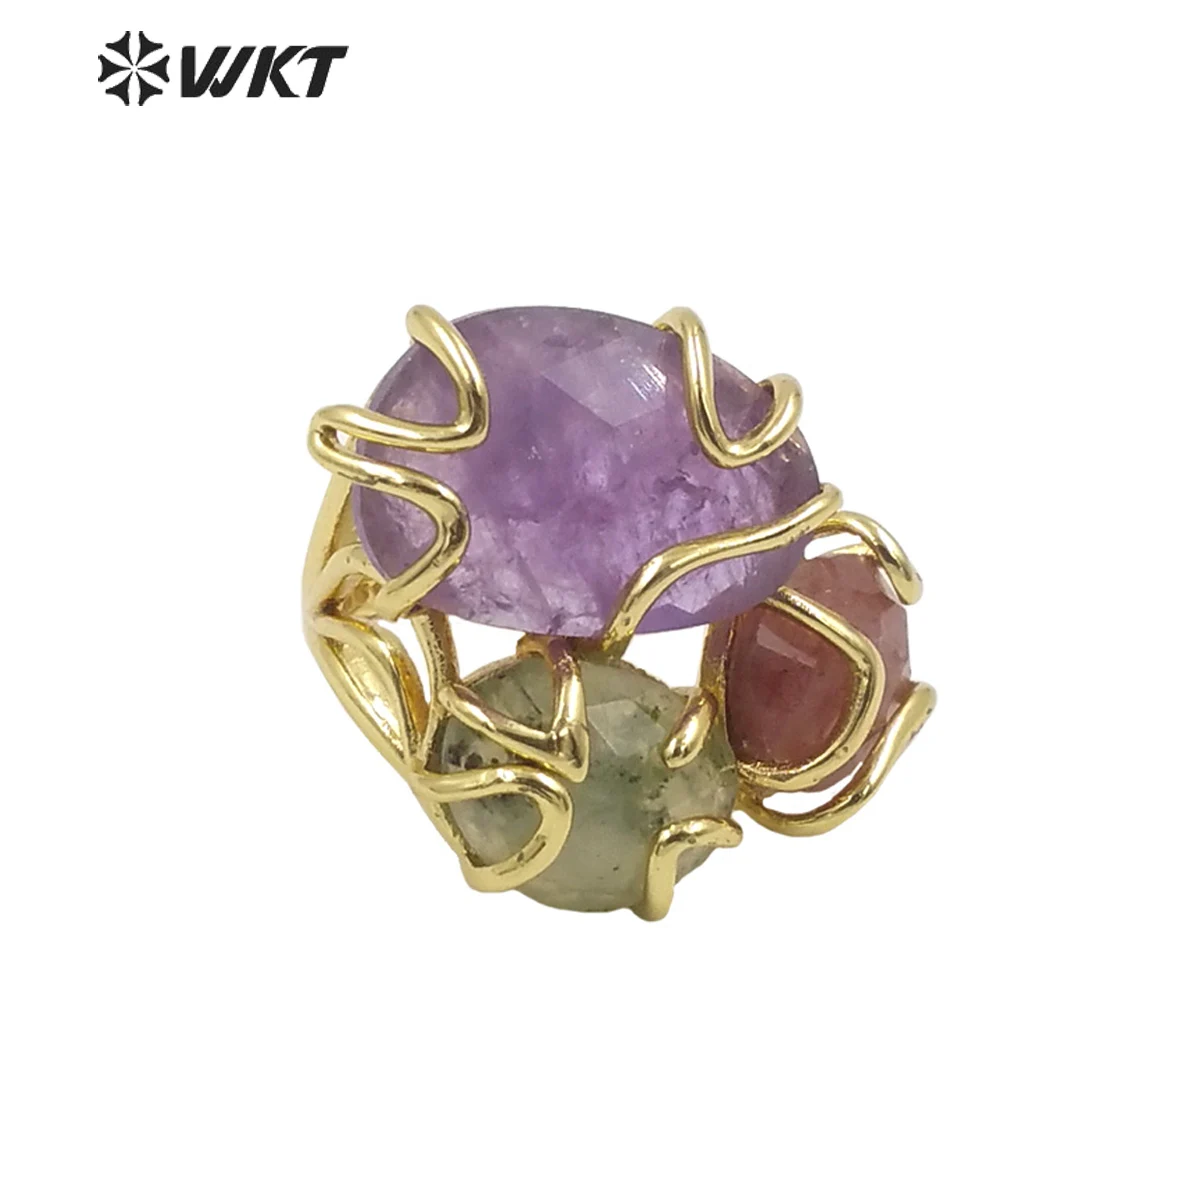 WT-R417 WKT Новый дизайн, Великолепное кольцо с камнем в оправе из тройного натурального драгоценного камня, Женское регулируемое кольцо из драгоценного разноцветного золота.